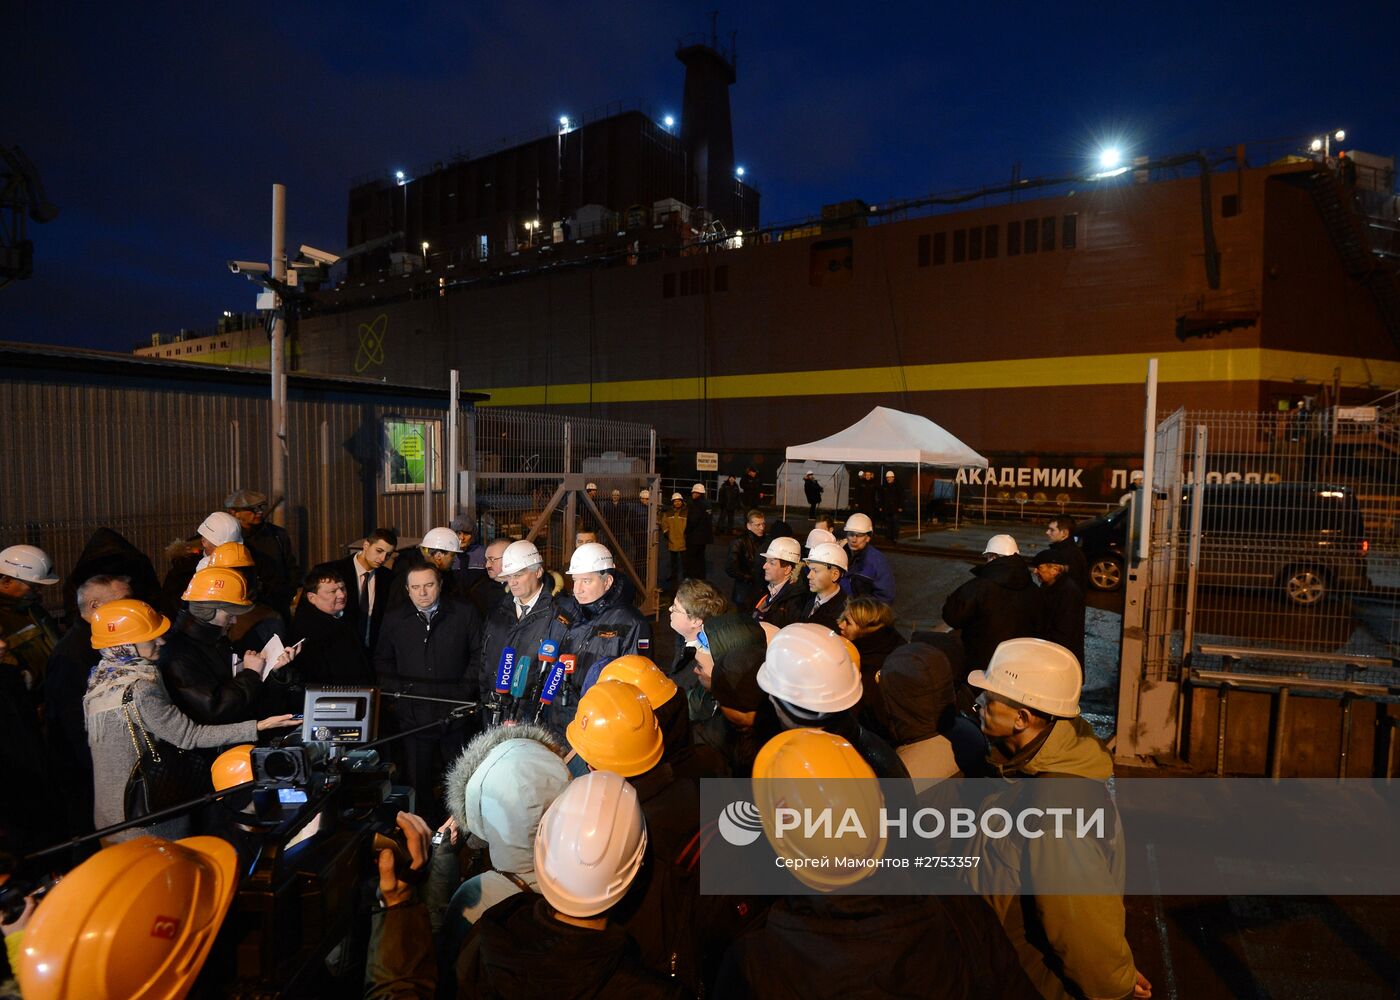 Вице-премьер Д.Рогозин посетил ООО "Балтийский завод" в Санкт-Петербурге